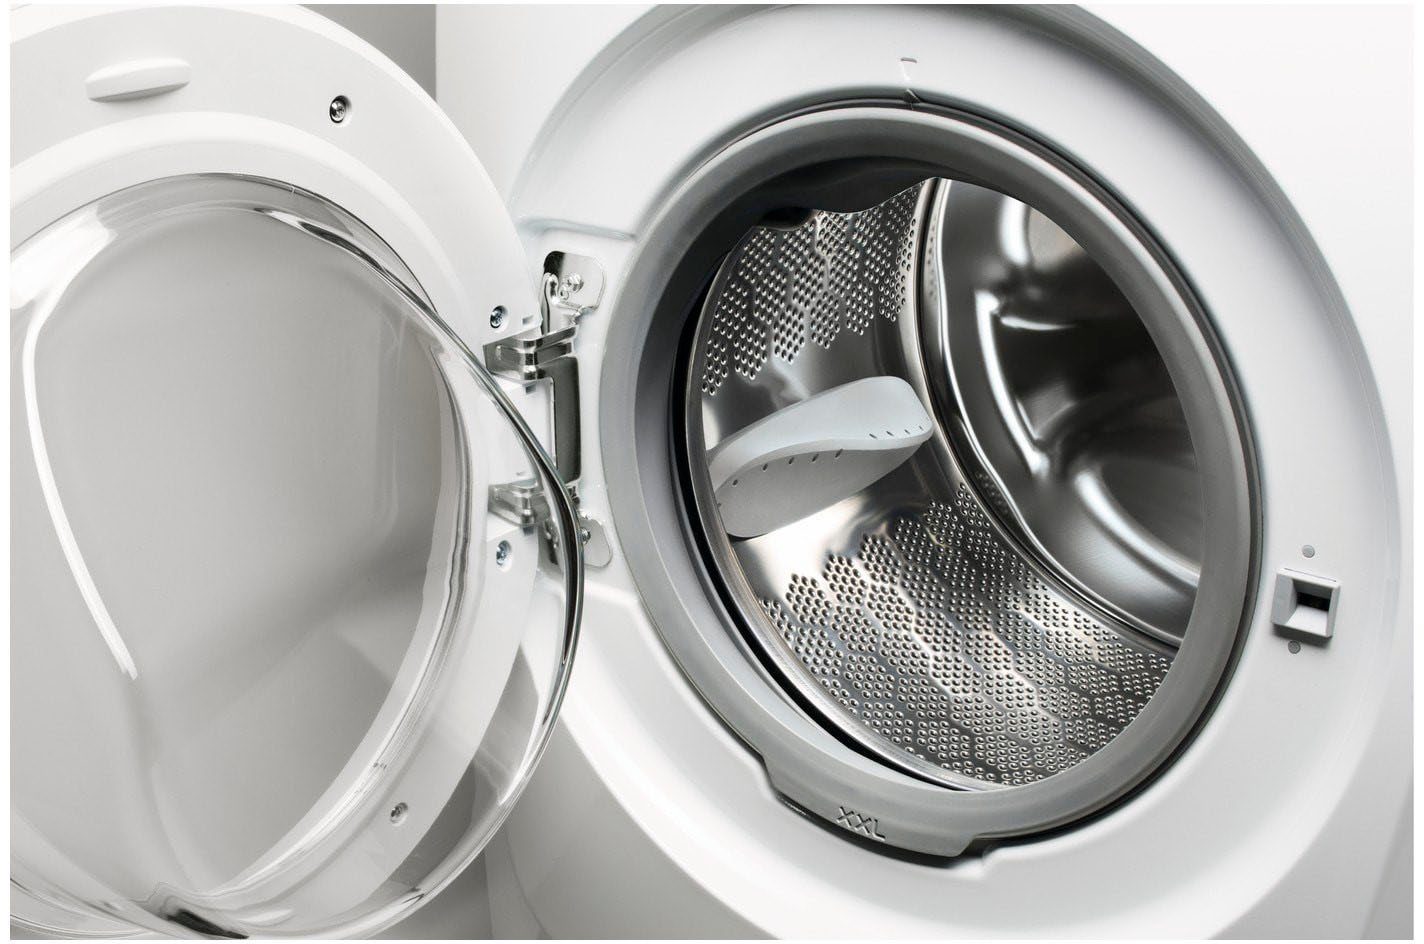 AEG Waschmaschine L6FBA51480 914913590, Dampf Anti-Allergie Programm U/min, Hygiene-/ kg, 8 1400 mit